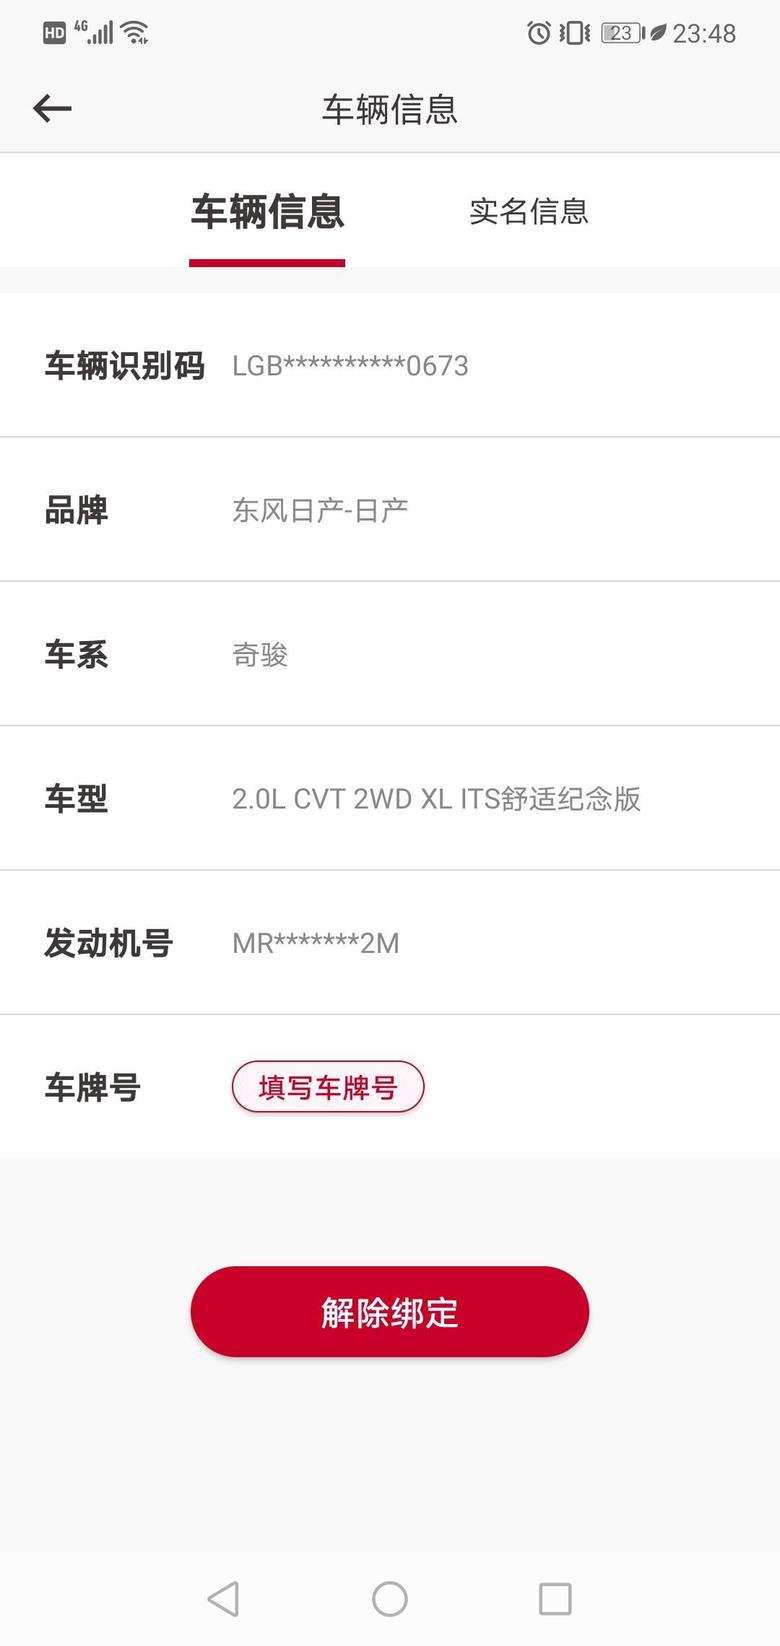 老款奇骏2.0舒适纪念版落地价19.2万，2021年9月27日生产的。请问广州这个价格是不是贵了？